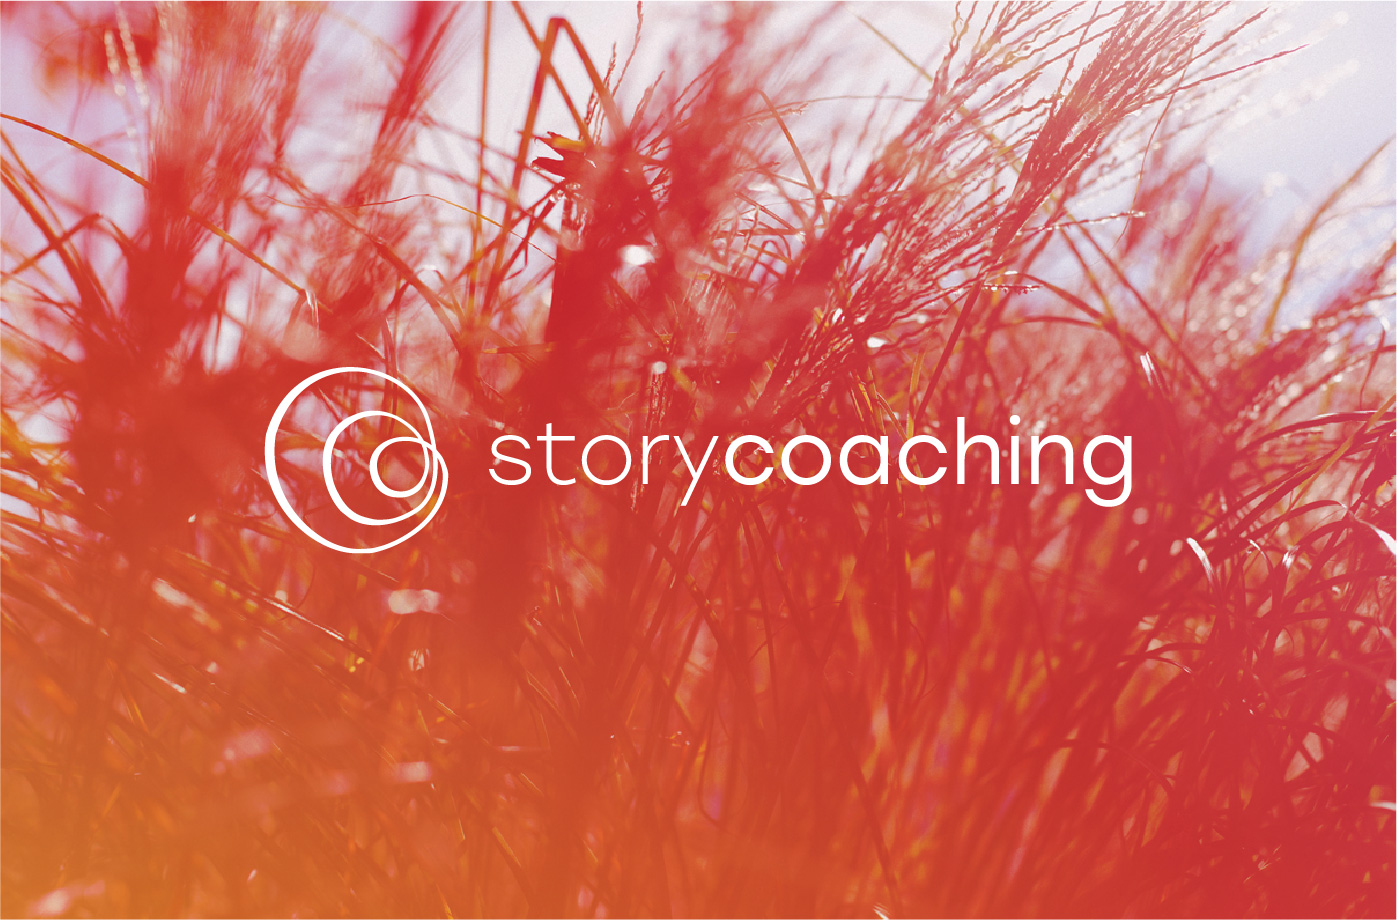 Storycoaching